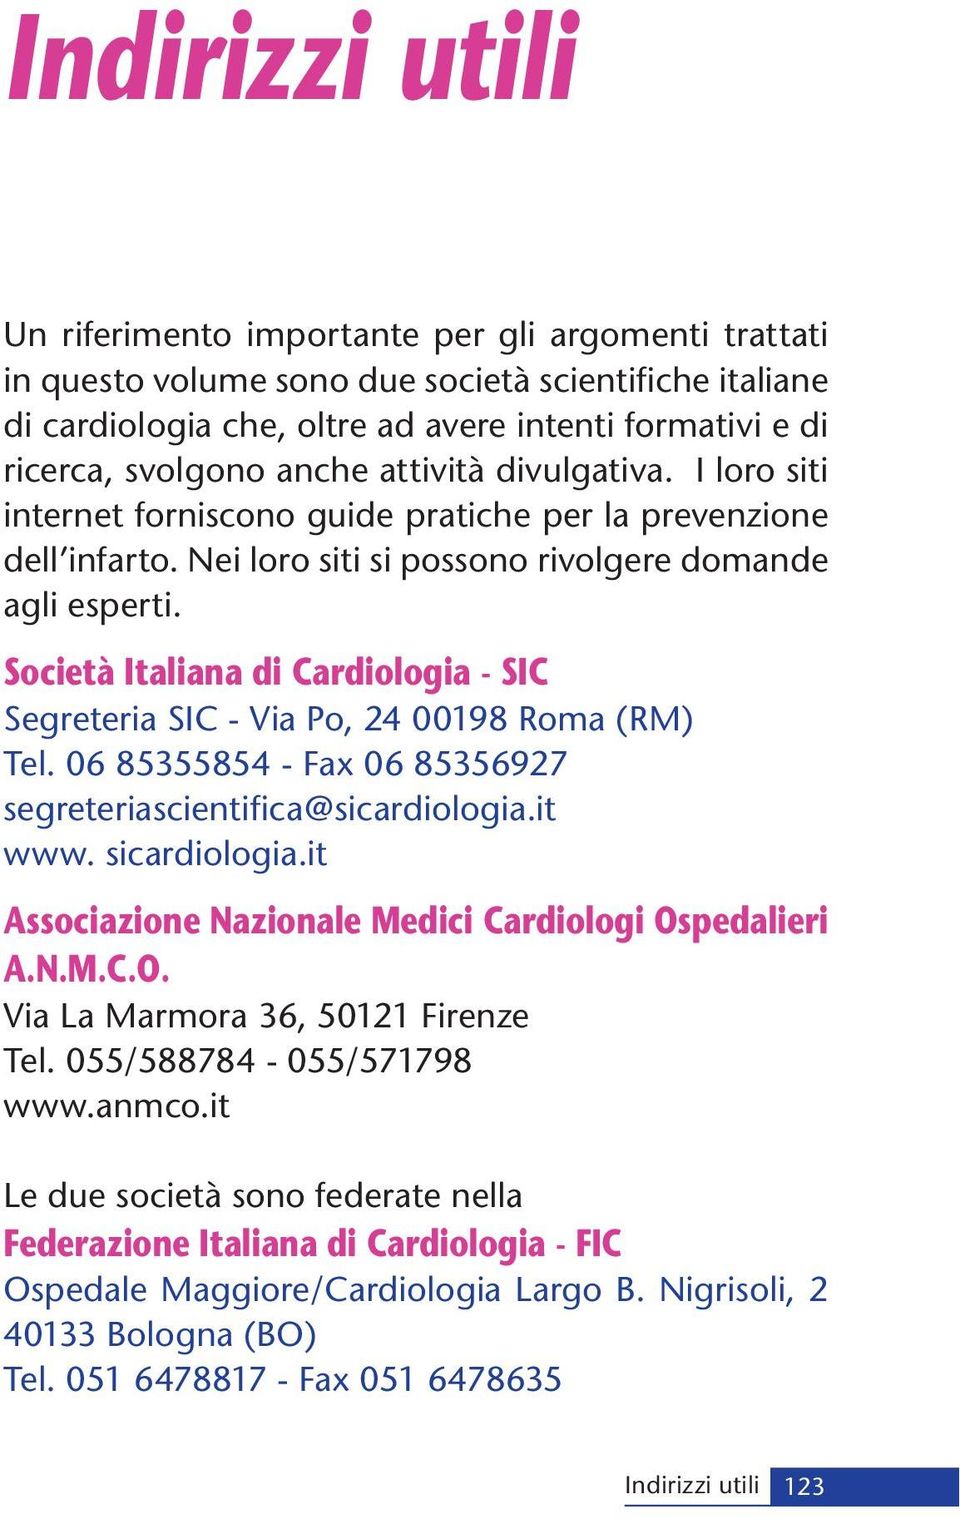 Società Italiana di Cardiologia - SIC Segreteria SIC - Via Po, 24 00198 Roma (RM) Tel. 06 85355854 - Fax 06 85356927 segreteriascientifica@sicardiologia.it www. sicardiologia.